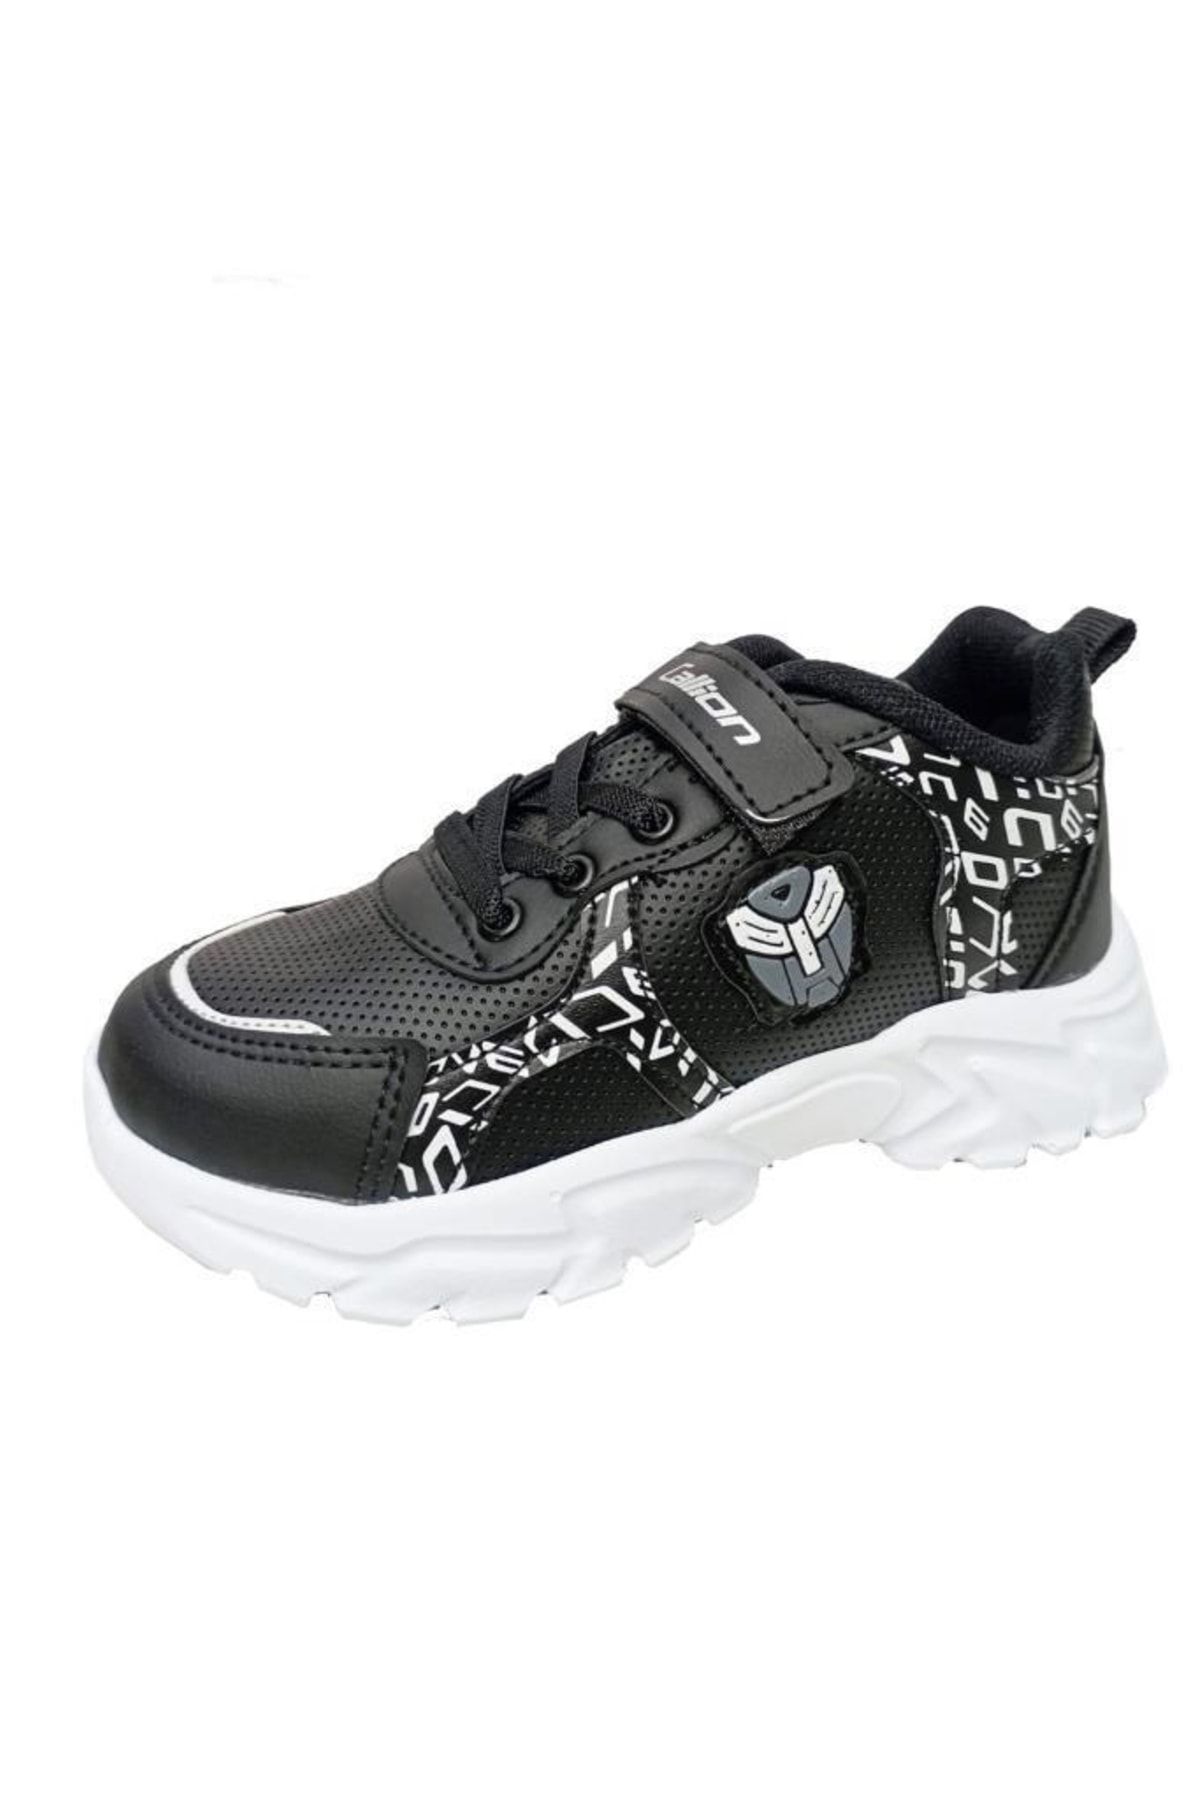 Callion 047 Deri Çocuk Sneakers Ayakkabı 31-35 Siyah Beyaz